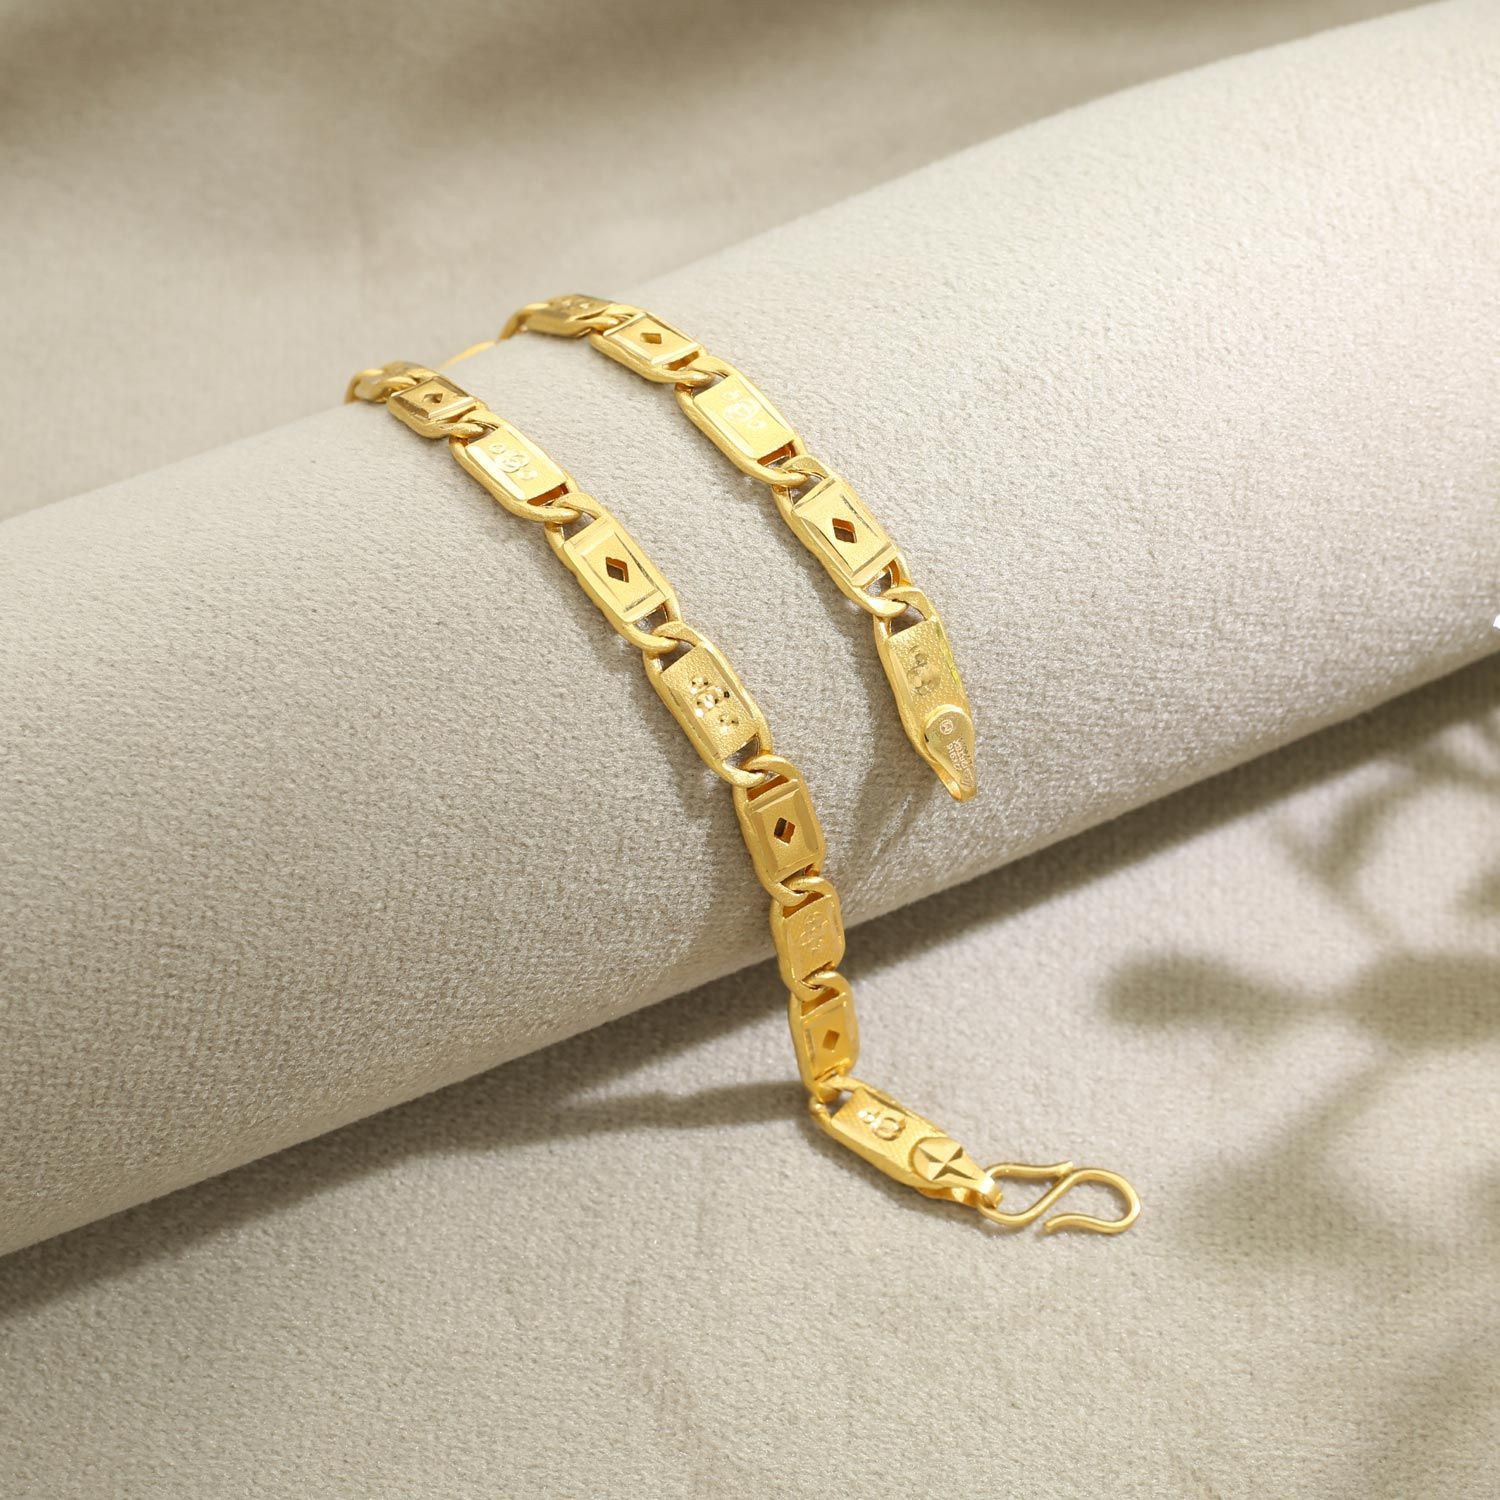 Discover 168+ malabar gold mens bracelet